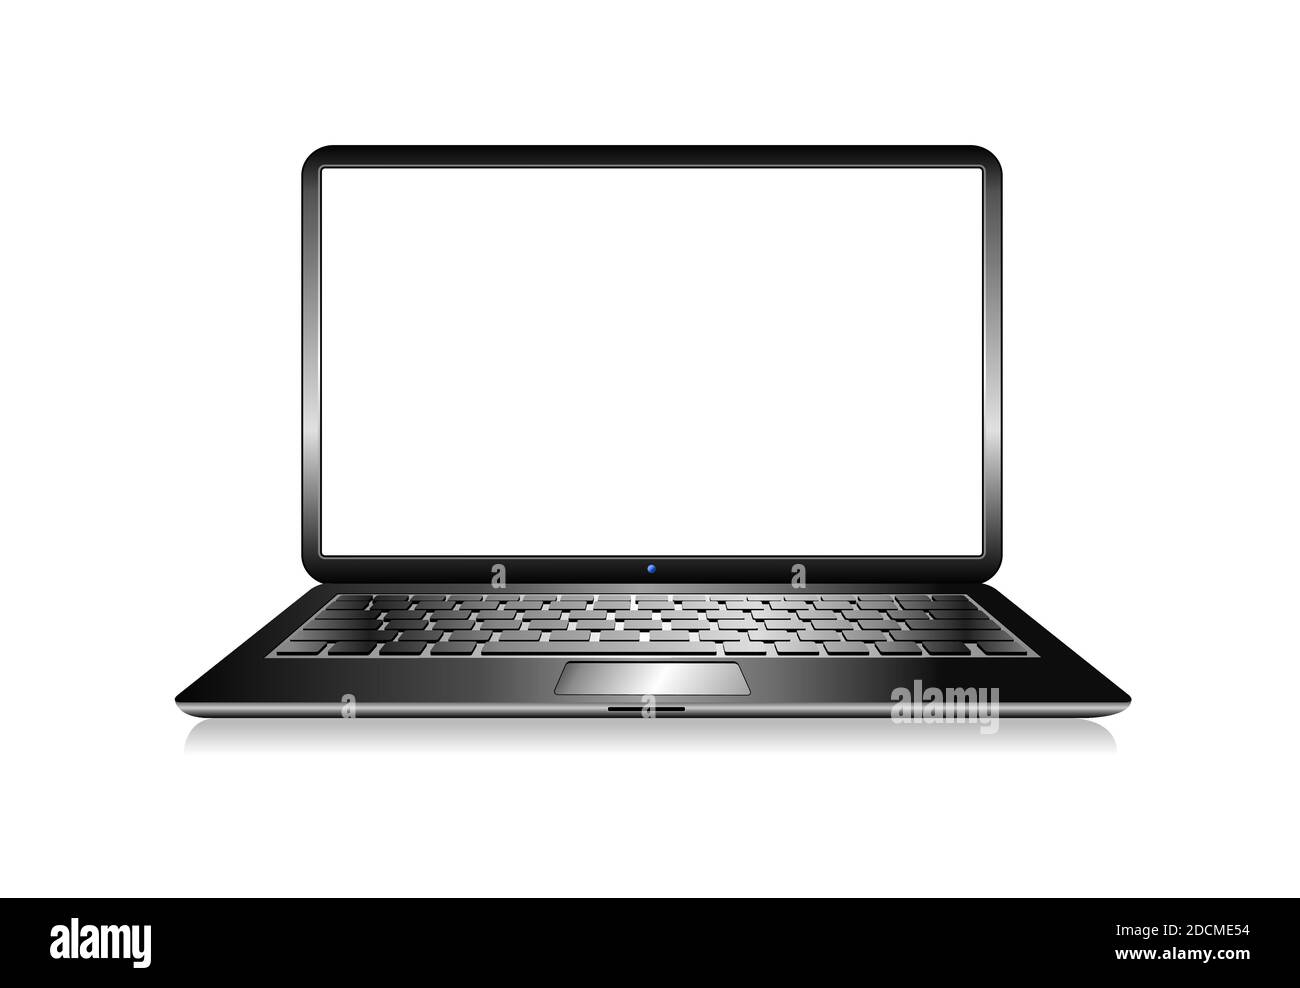 Icona del computer portatile PC immagine vettoriale - notebook fotorealistico con schermo vuoto isolato su sfondo bianco Illustrazione Vettoriale